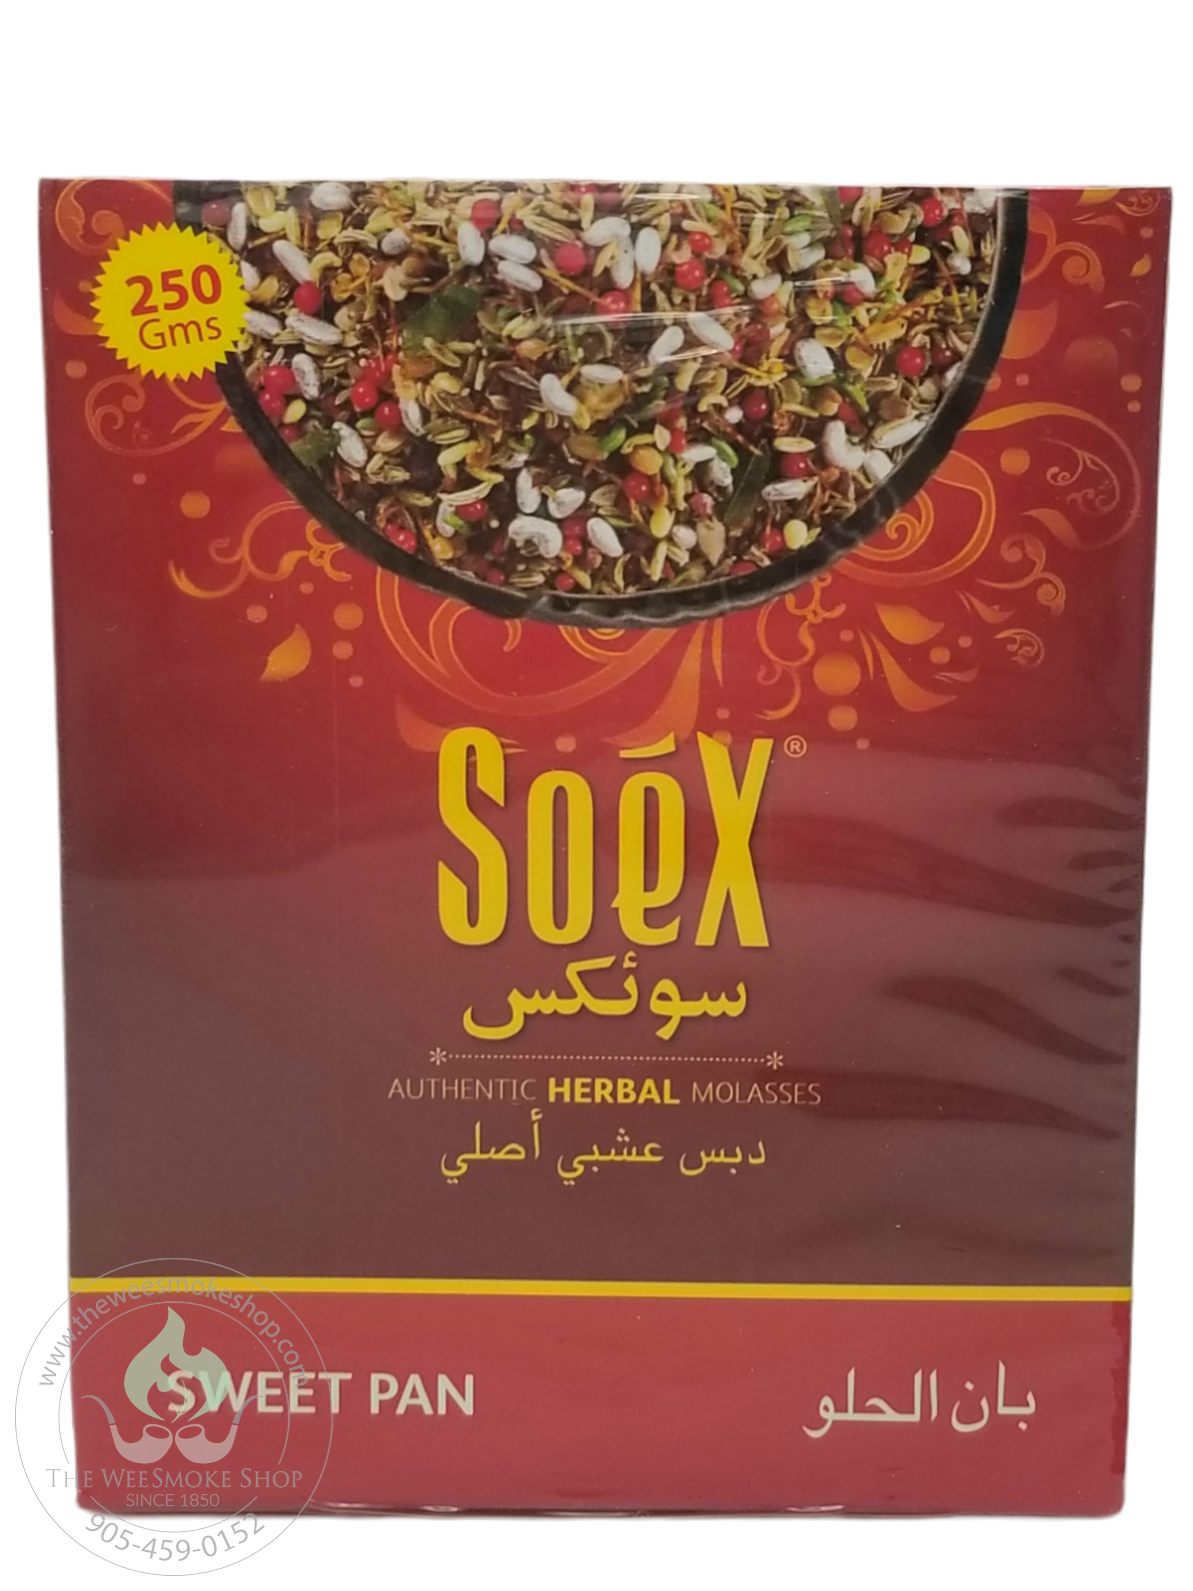 Sweet Pan Soex Herbal Molasses (250g)-Hookah accessories-The Wee Smoke Shop